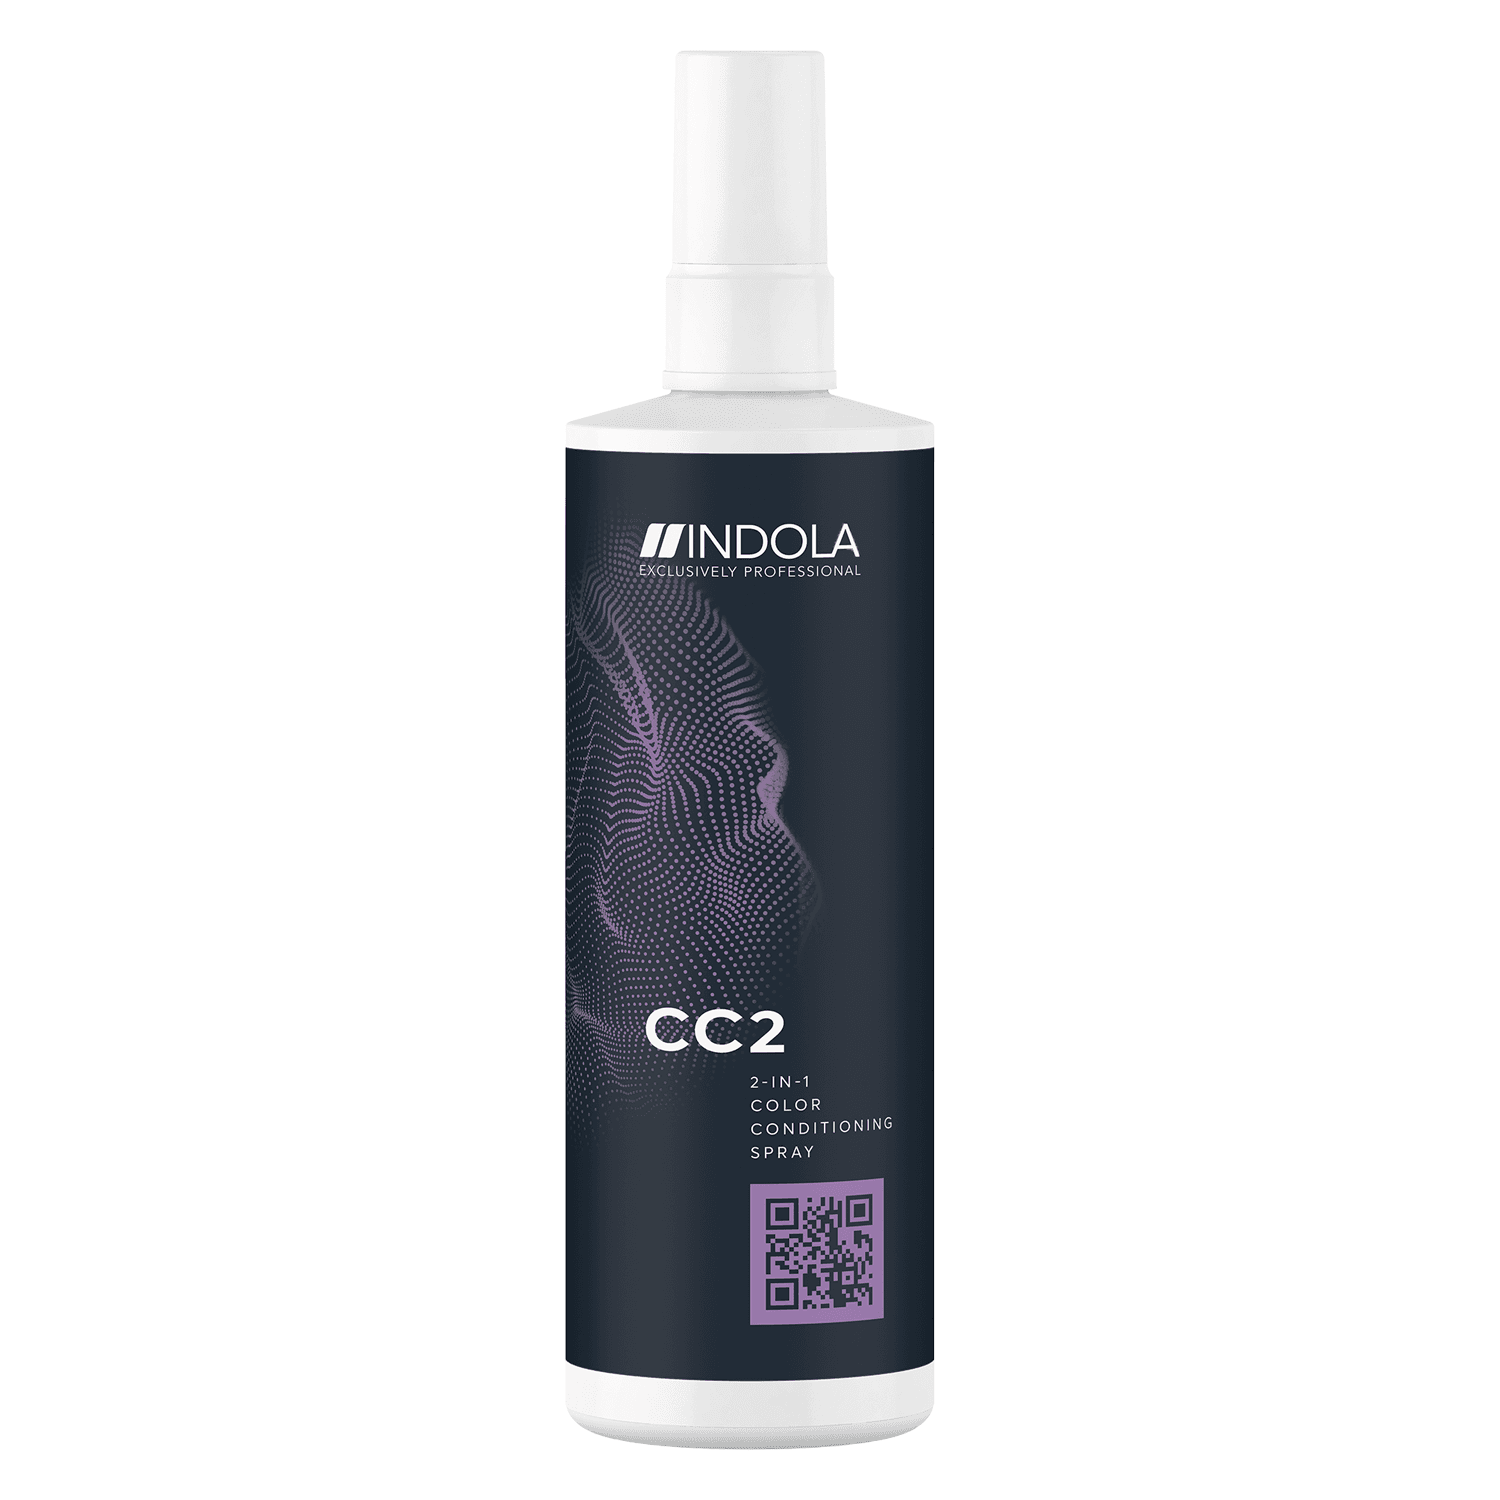 Indola Color - CC2 2-in-1 Color Conditioning Spray